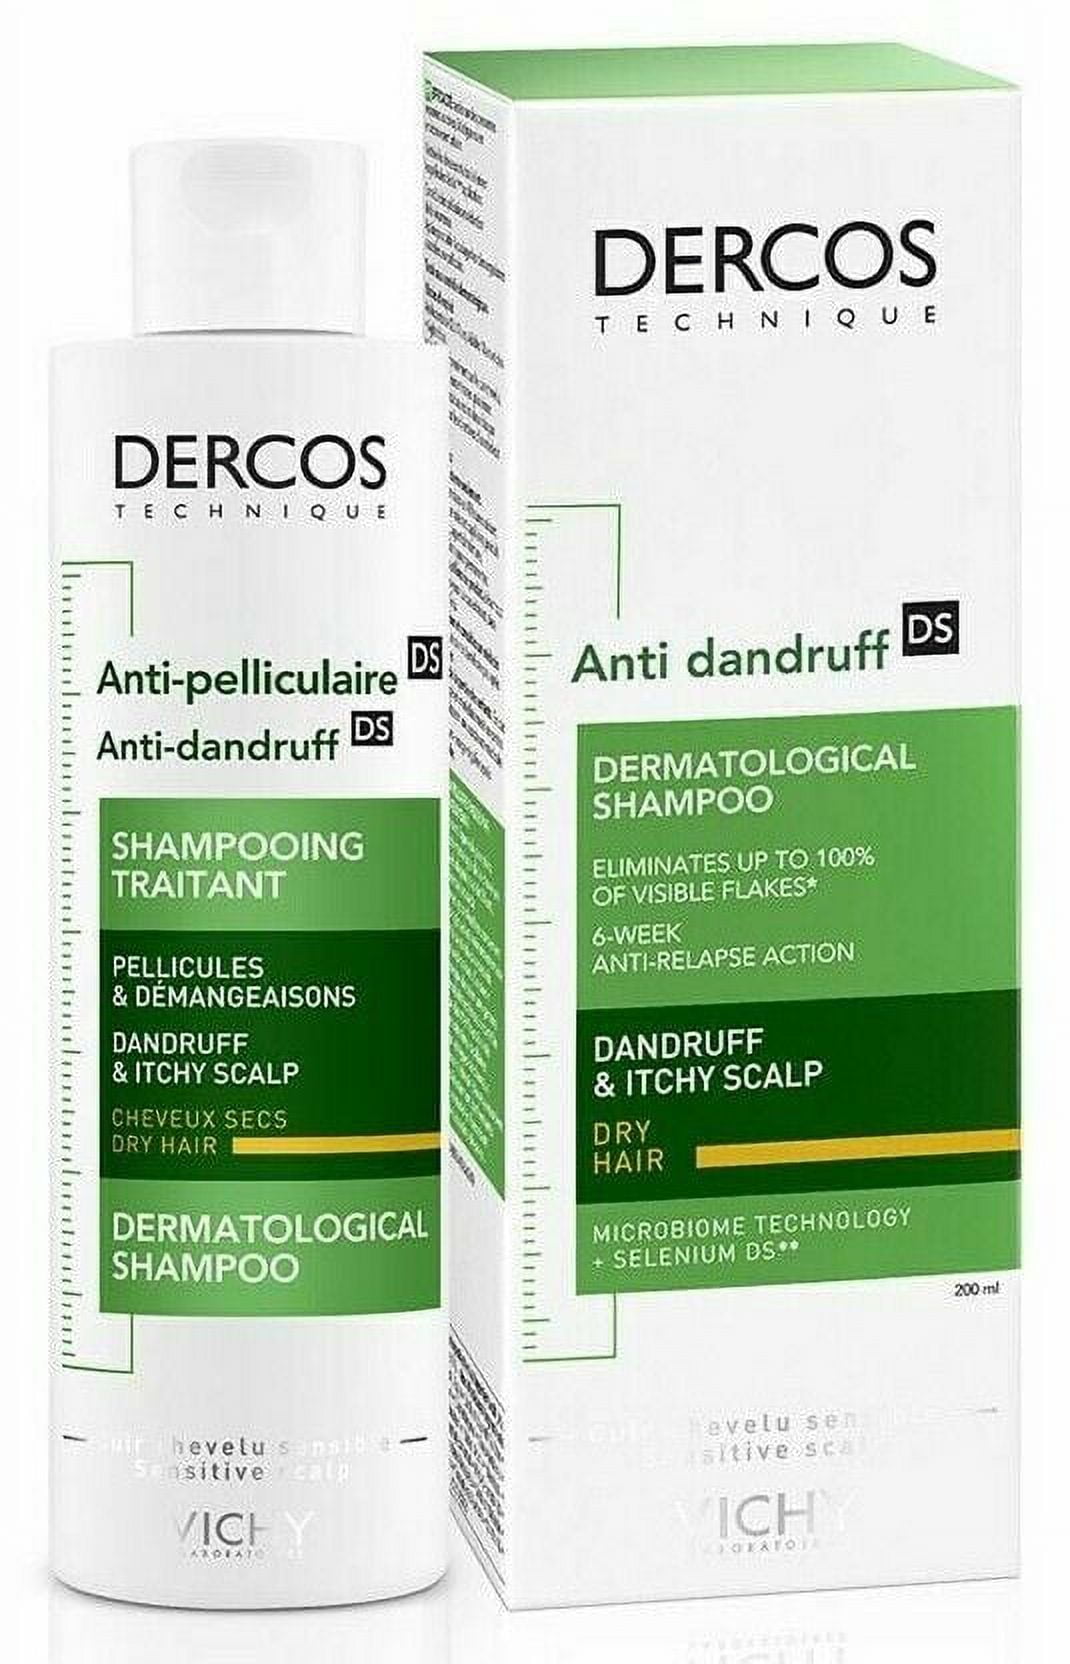 vichy dercos anti pelliculaire szampon 200ml cena